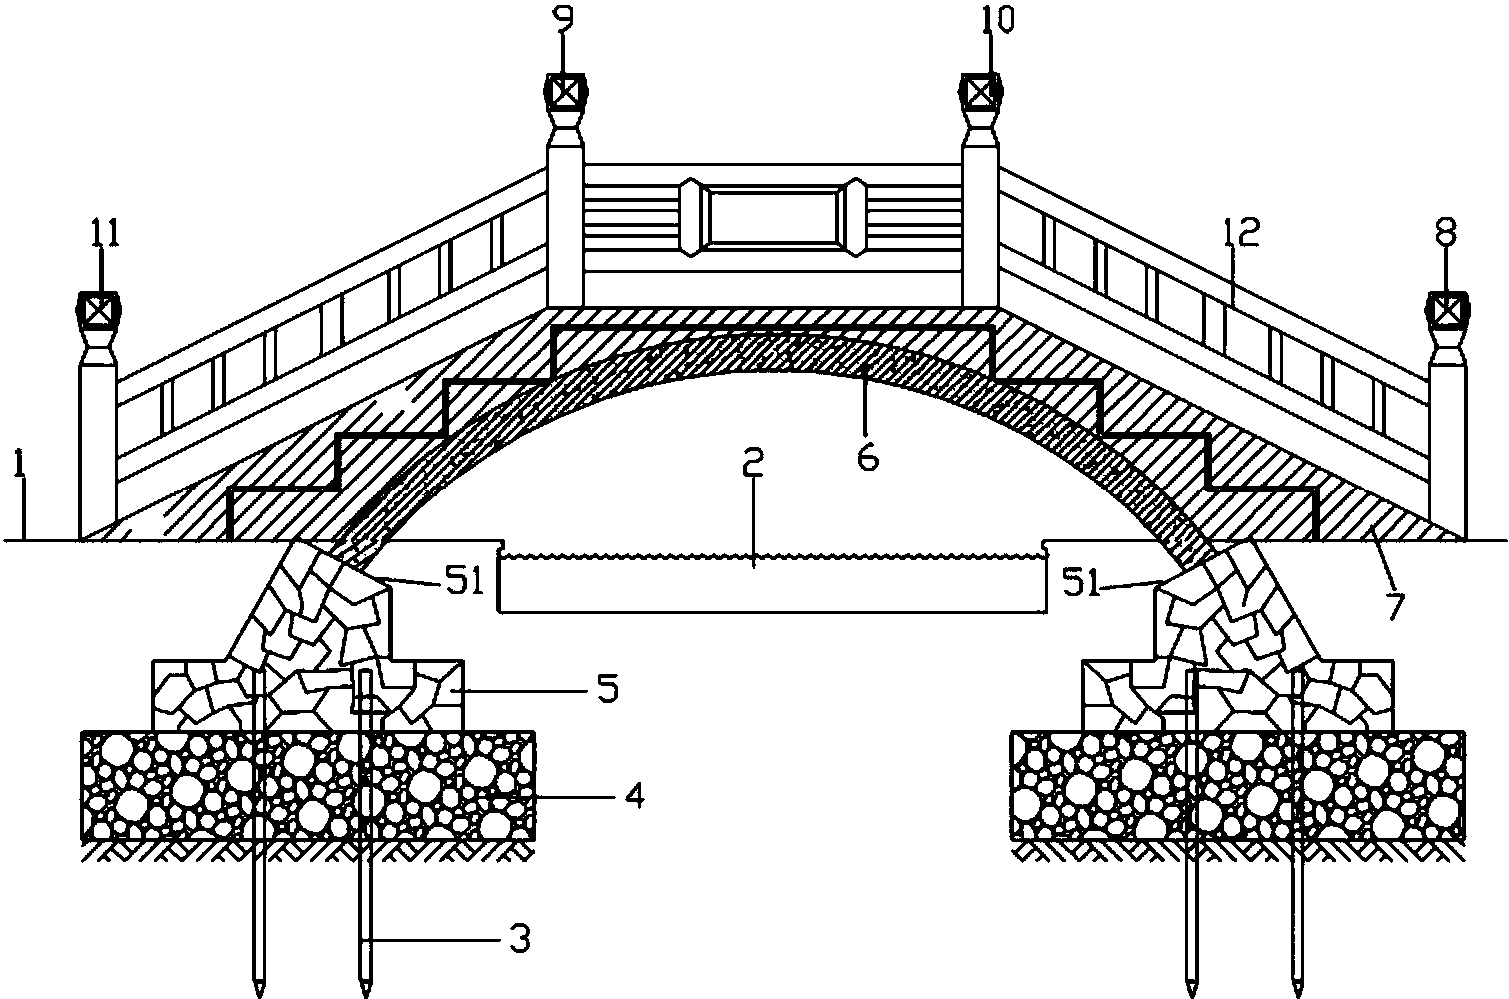 桁架拱桥示意图图片